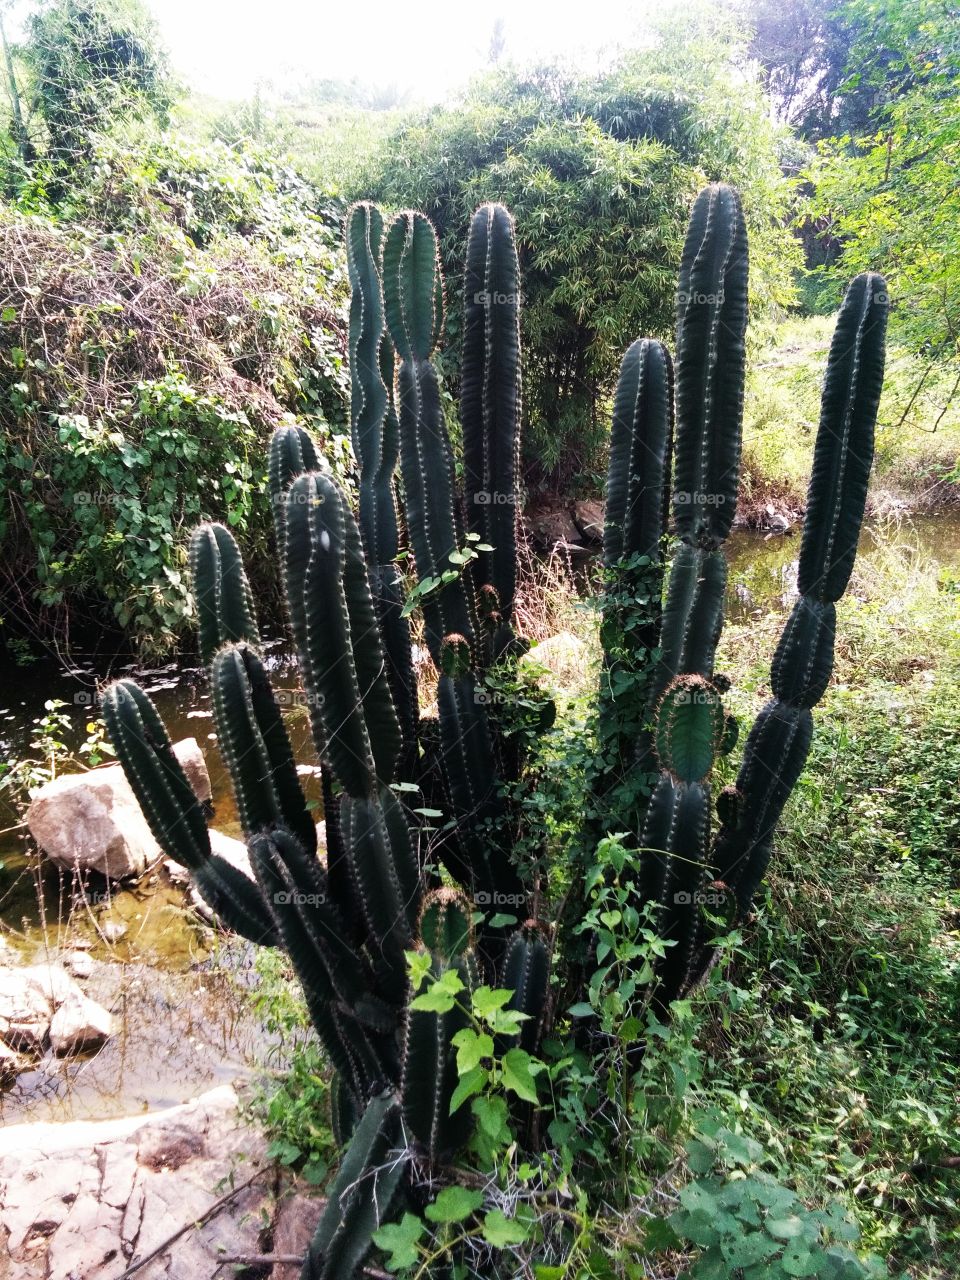 cactus plant and shorp mullin at natural